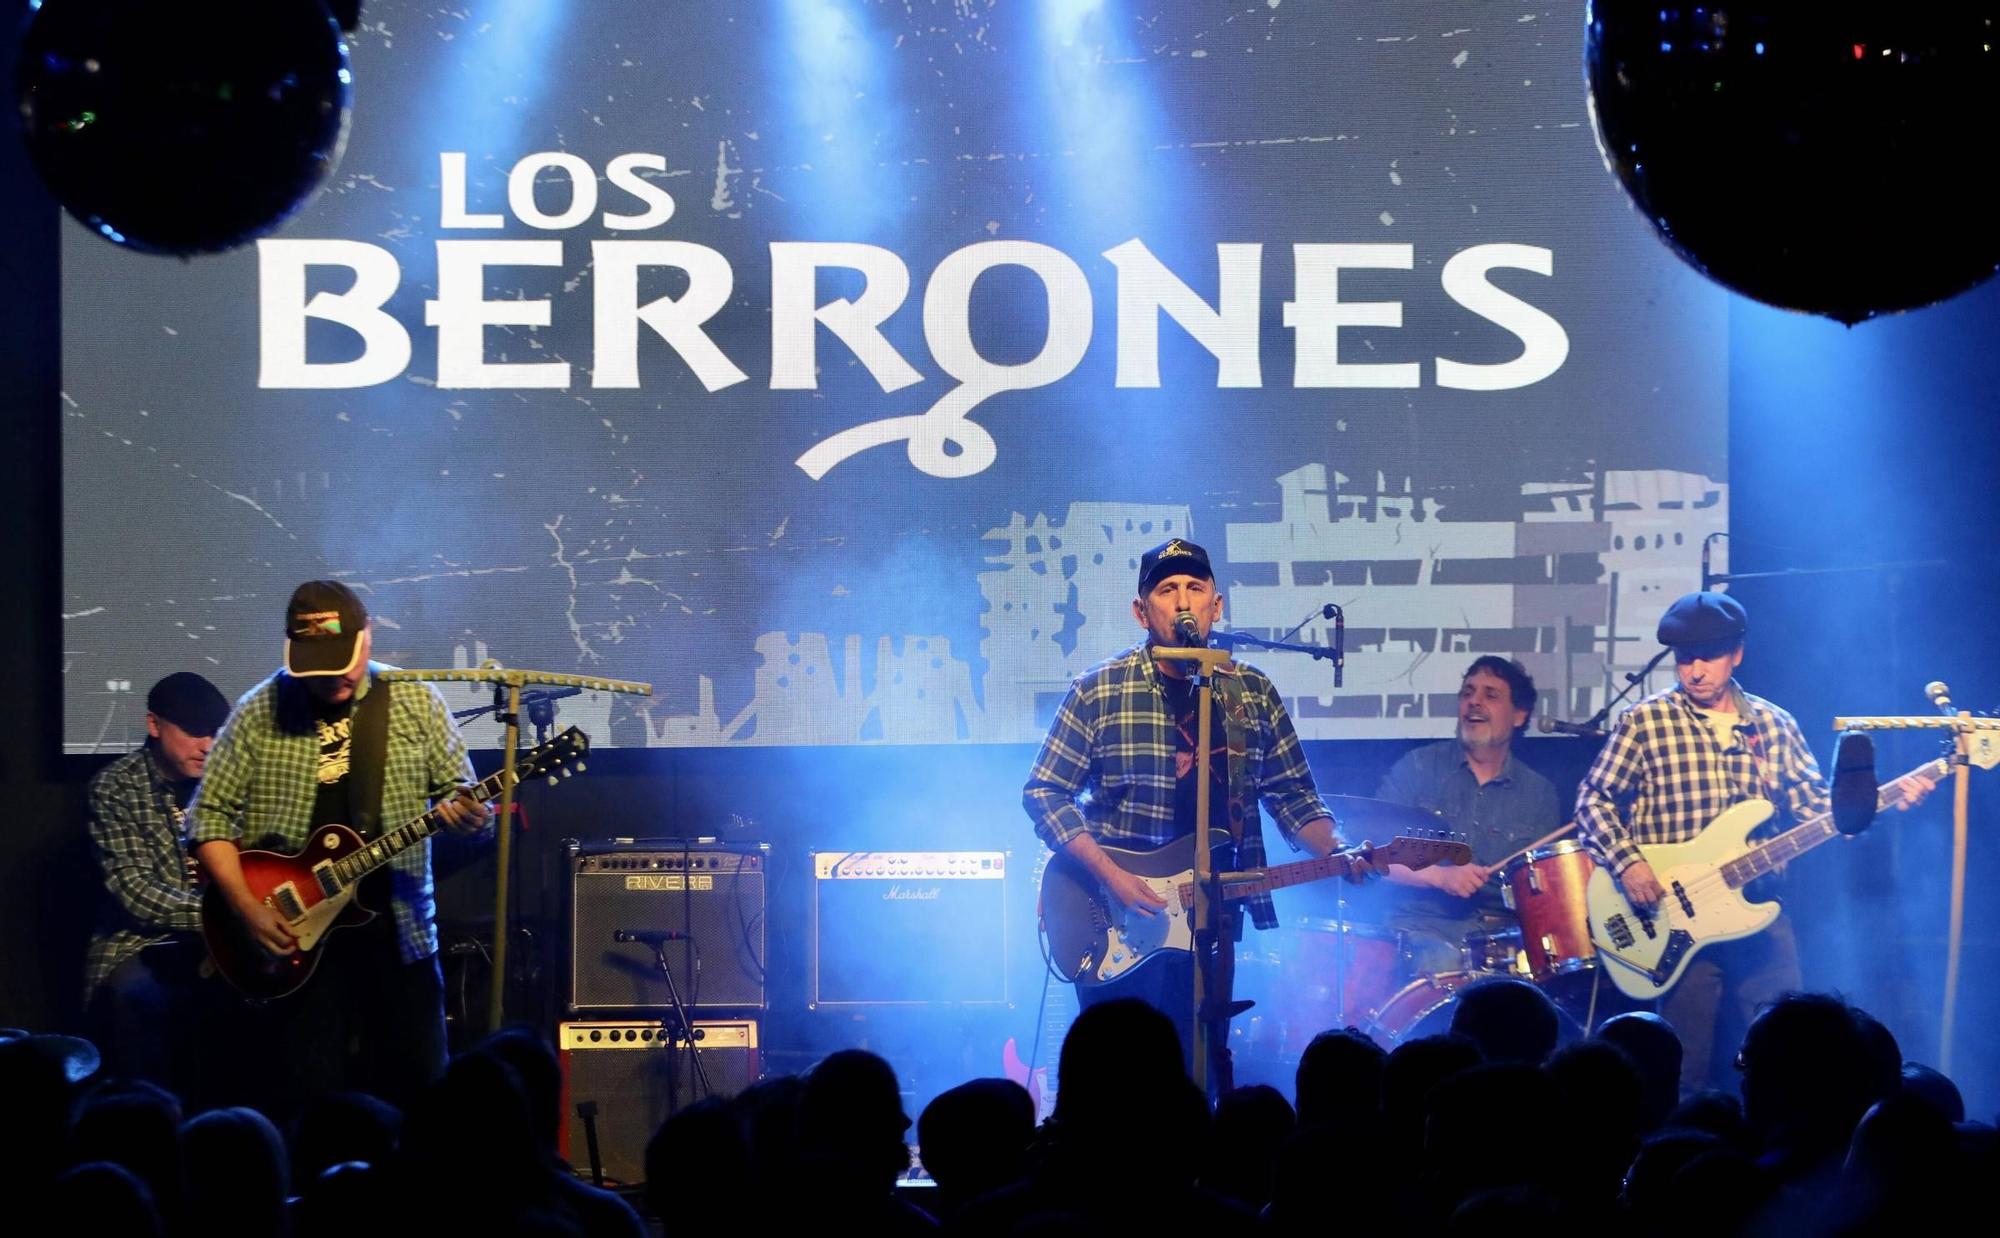 Así fue el cierre de gira de "Los Berrones" en Gijón (en imágenes)